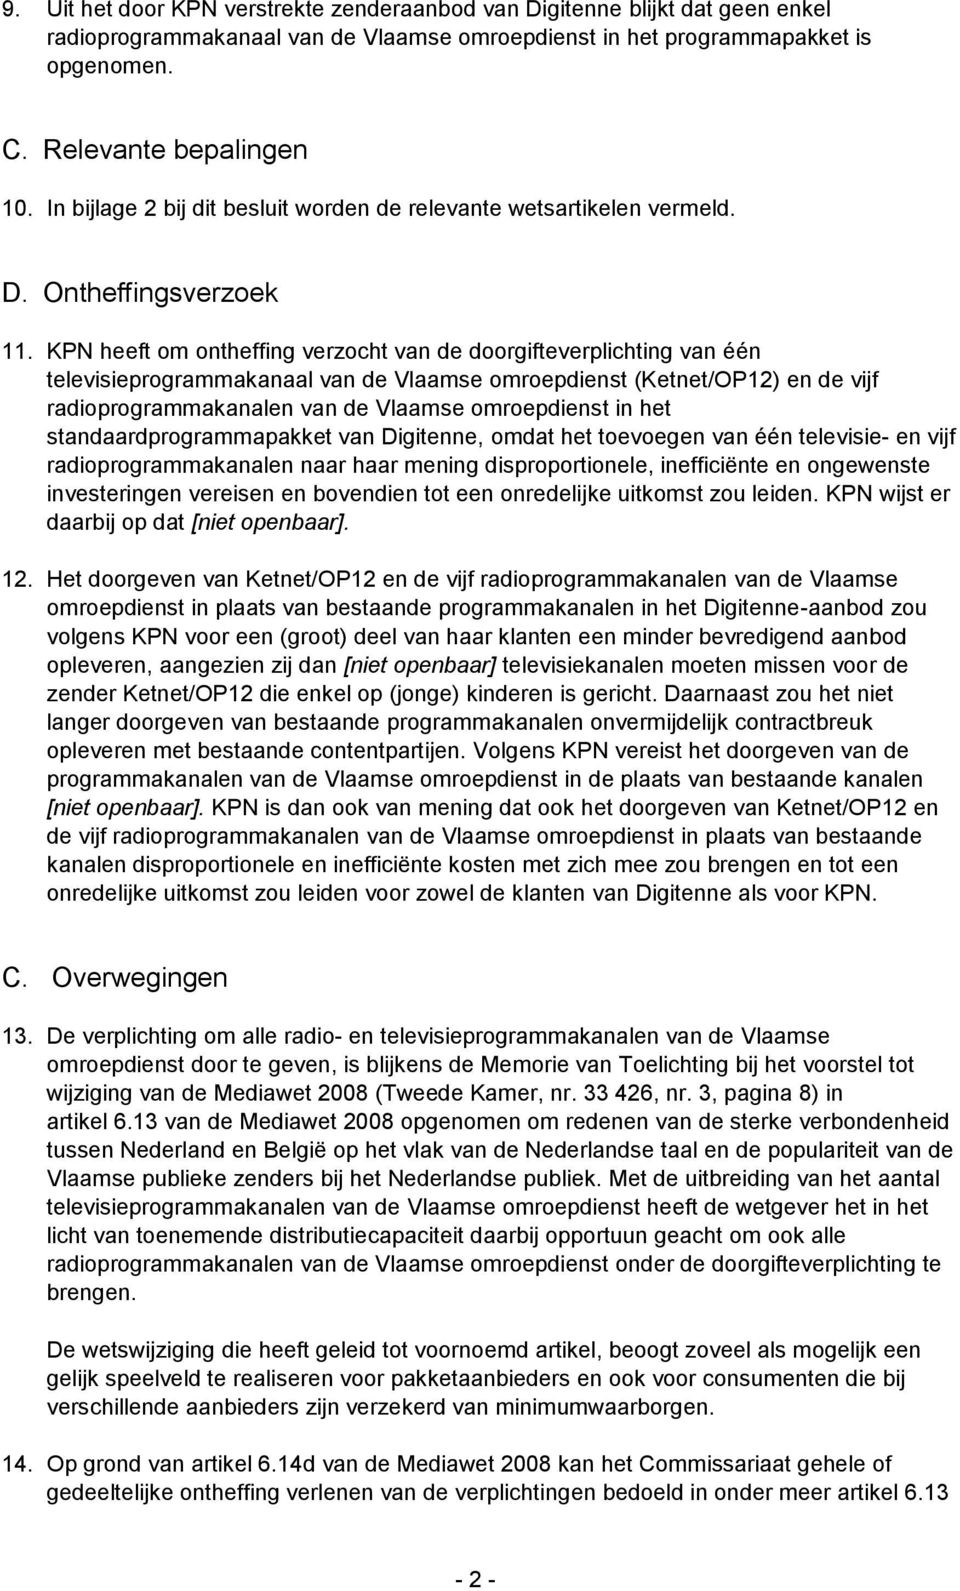 KPN heeft om ontheffing verzocht van de doorgifteverplichting van één televisieprogrammakanaal van de Vlaamse omroepdienst (Ketnet/OP12) en de vijf radioprogrammakanalen van de Vlaamse omroepdienst